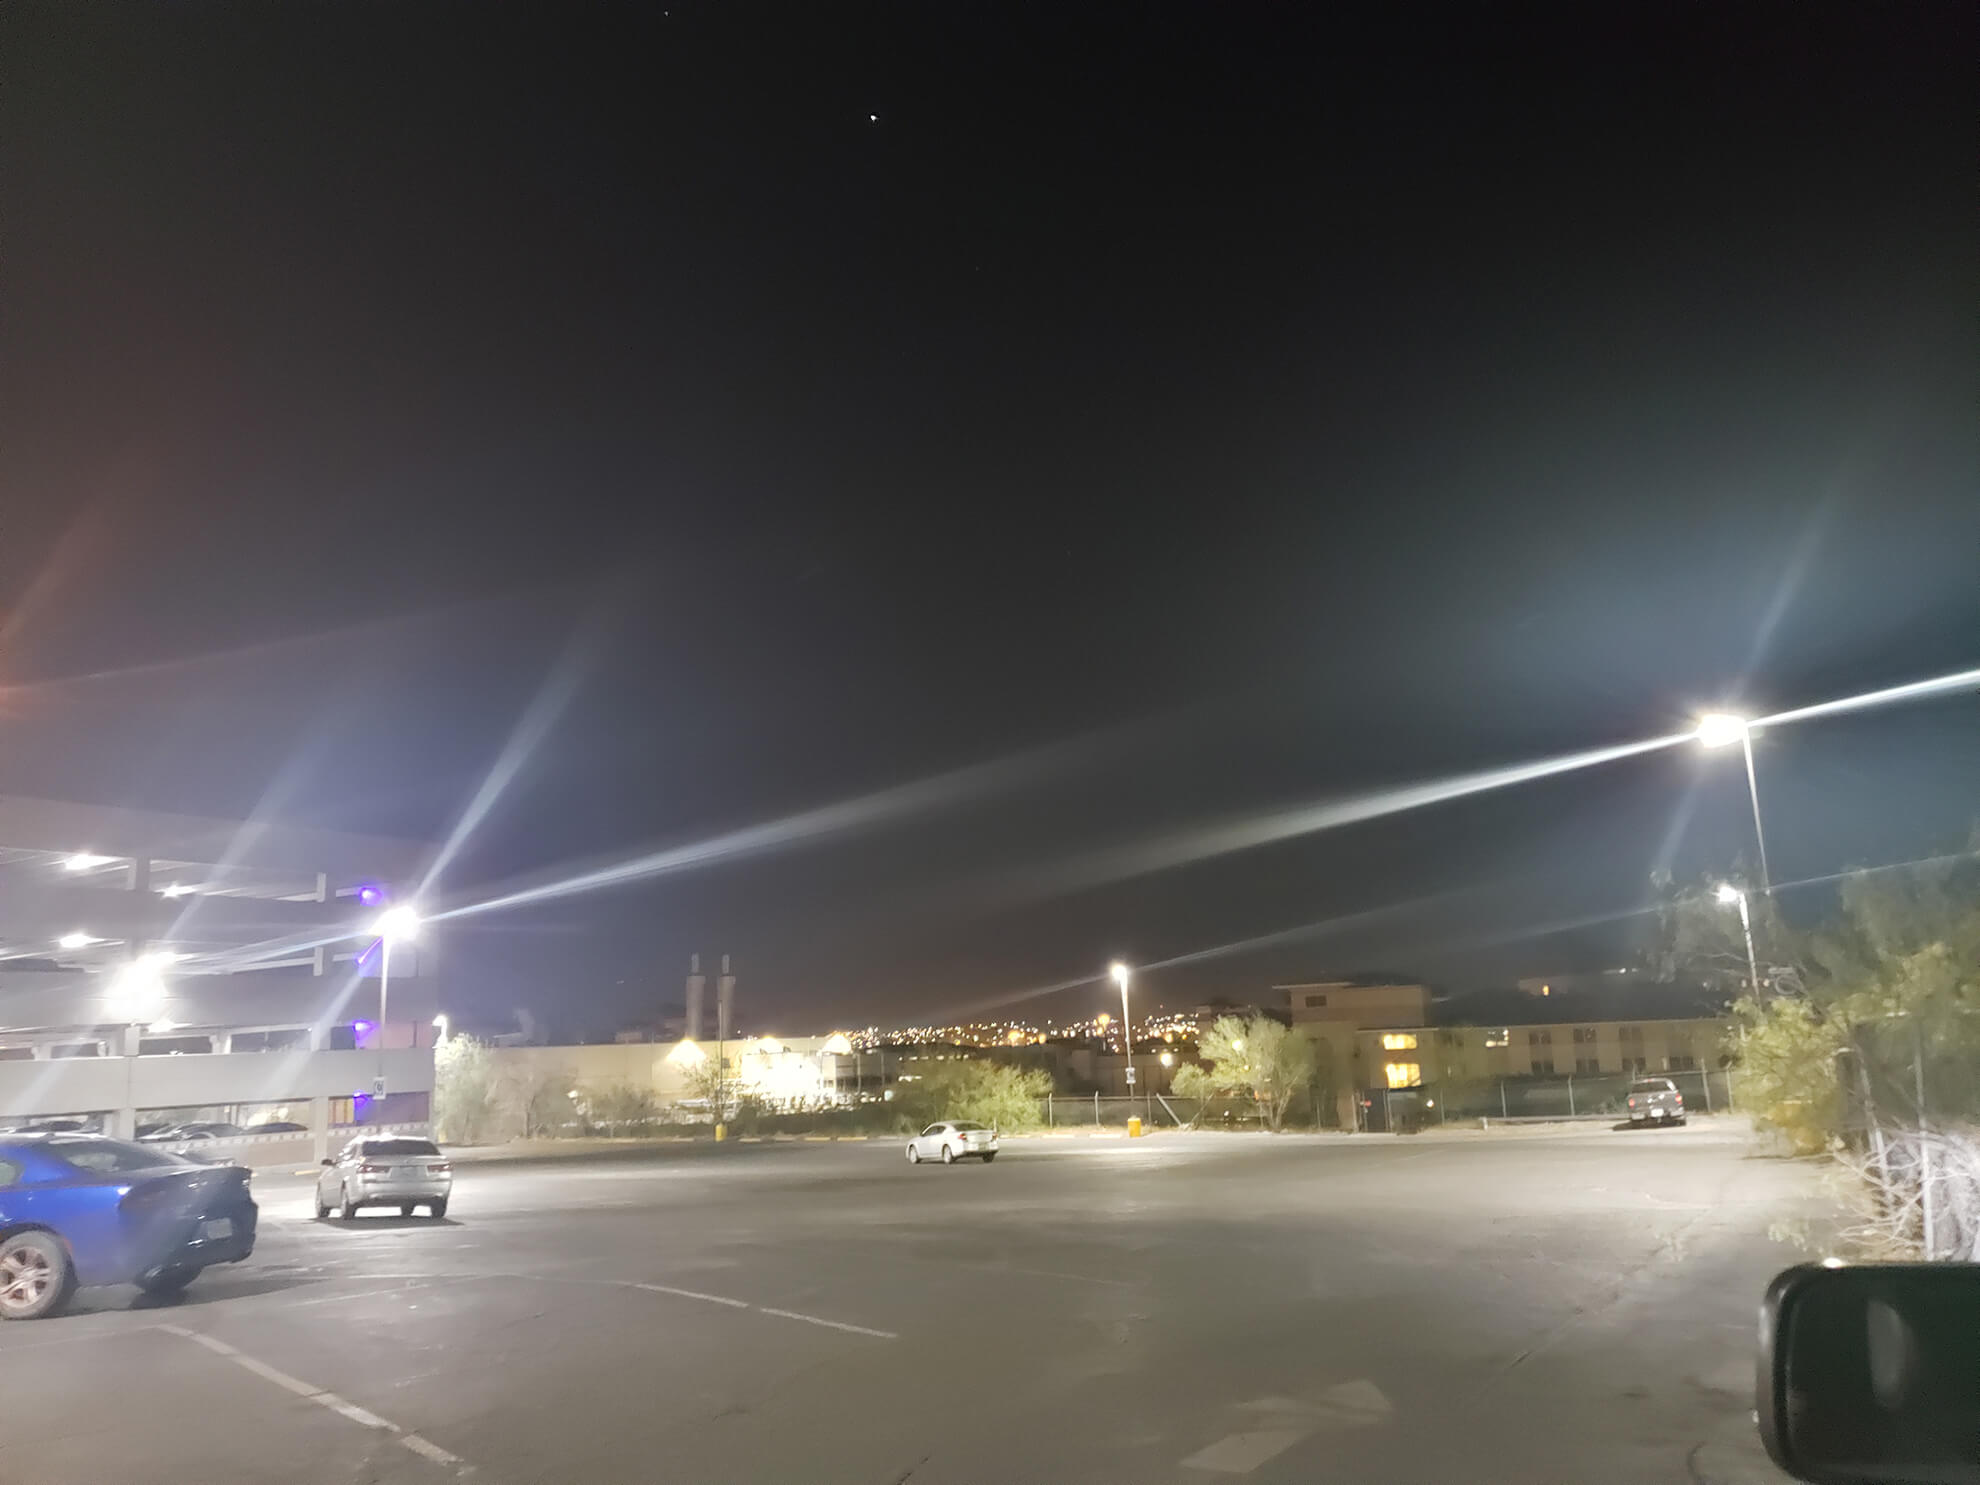 Hospital Parking Lights